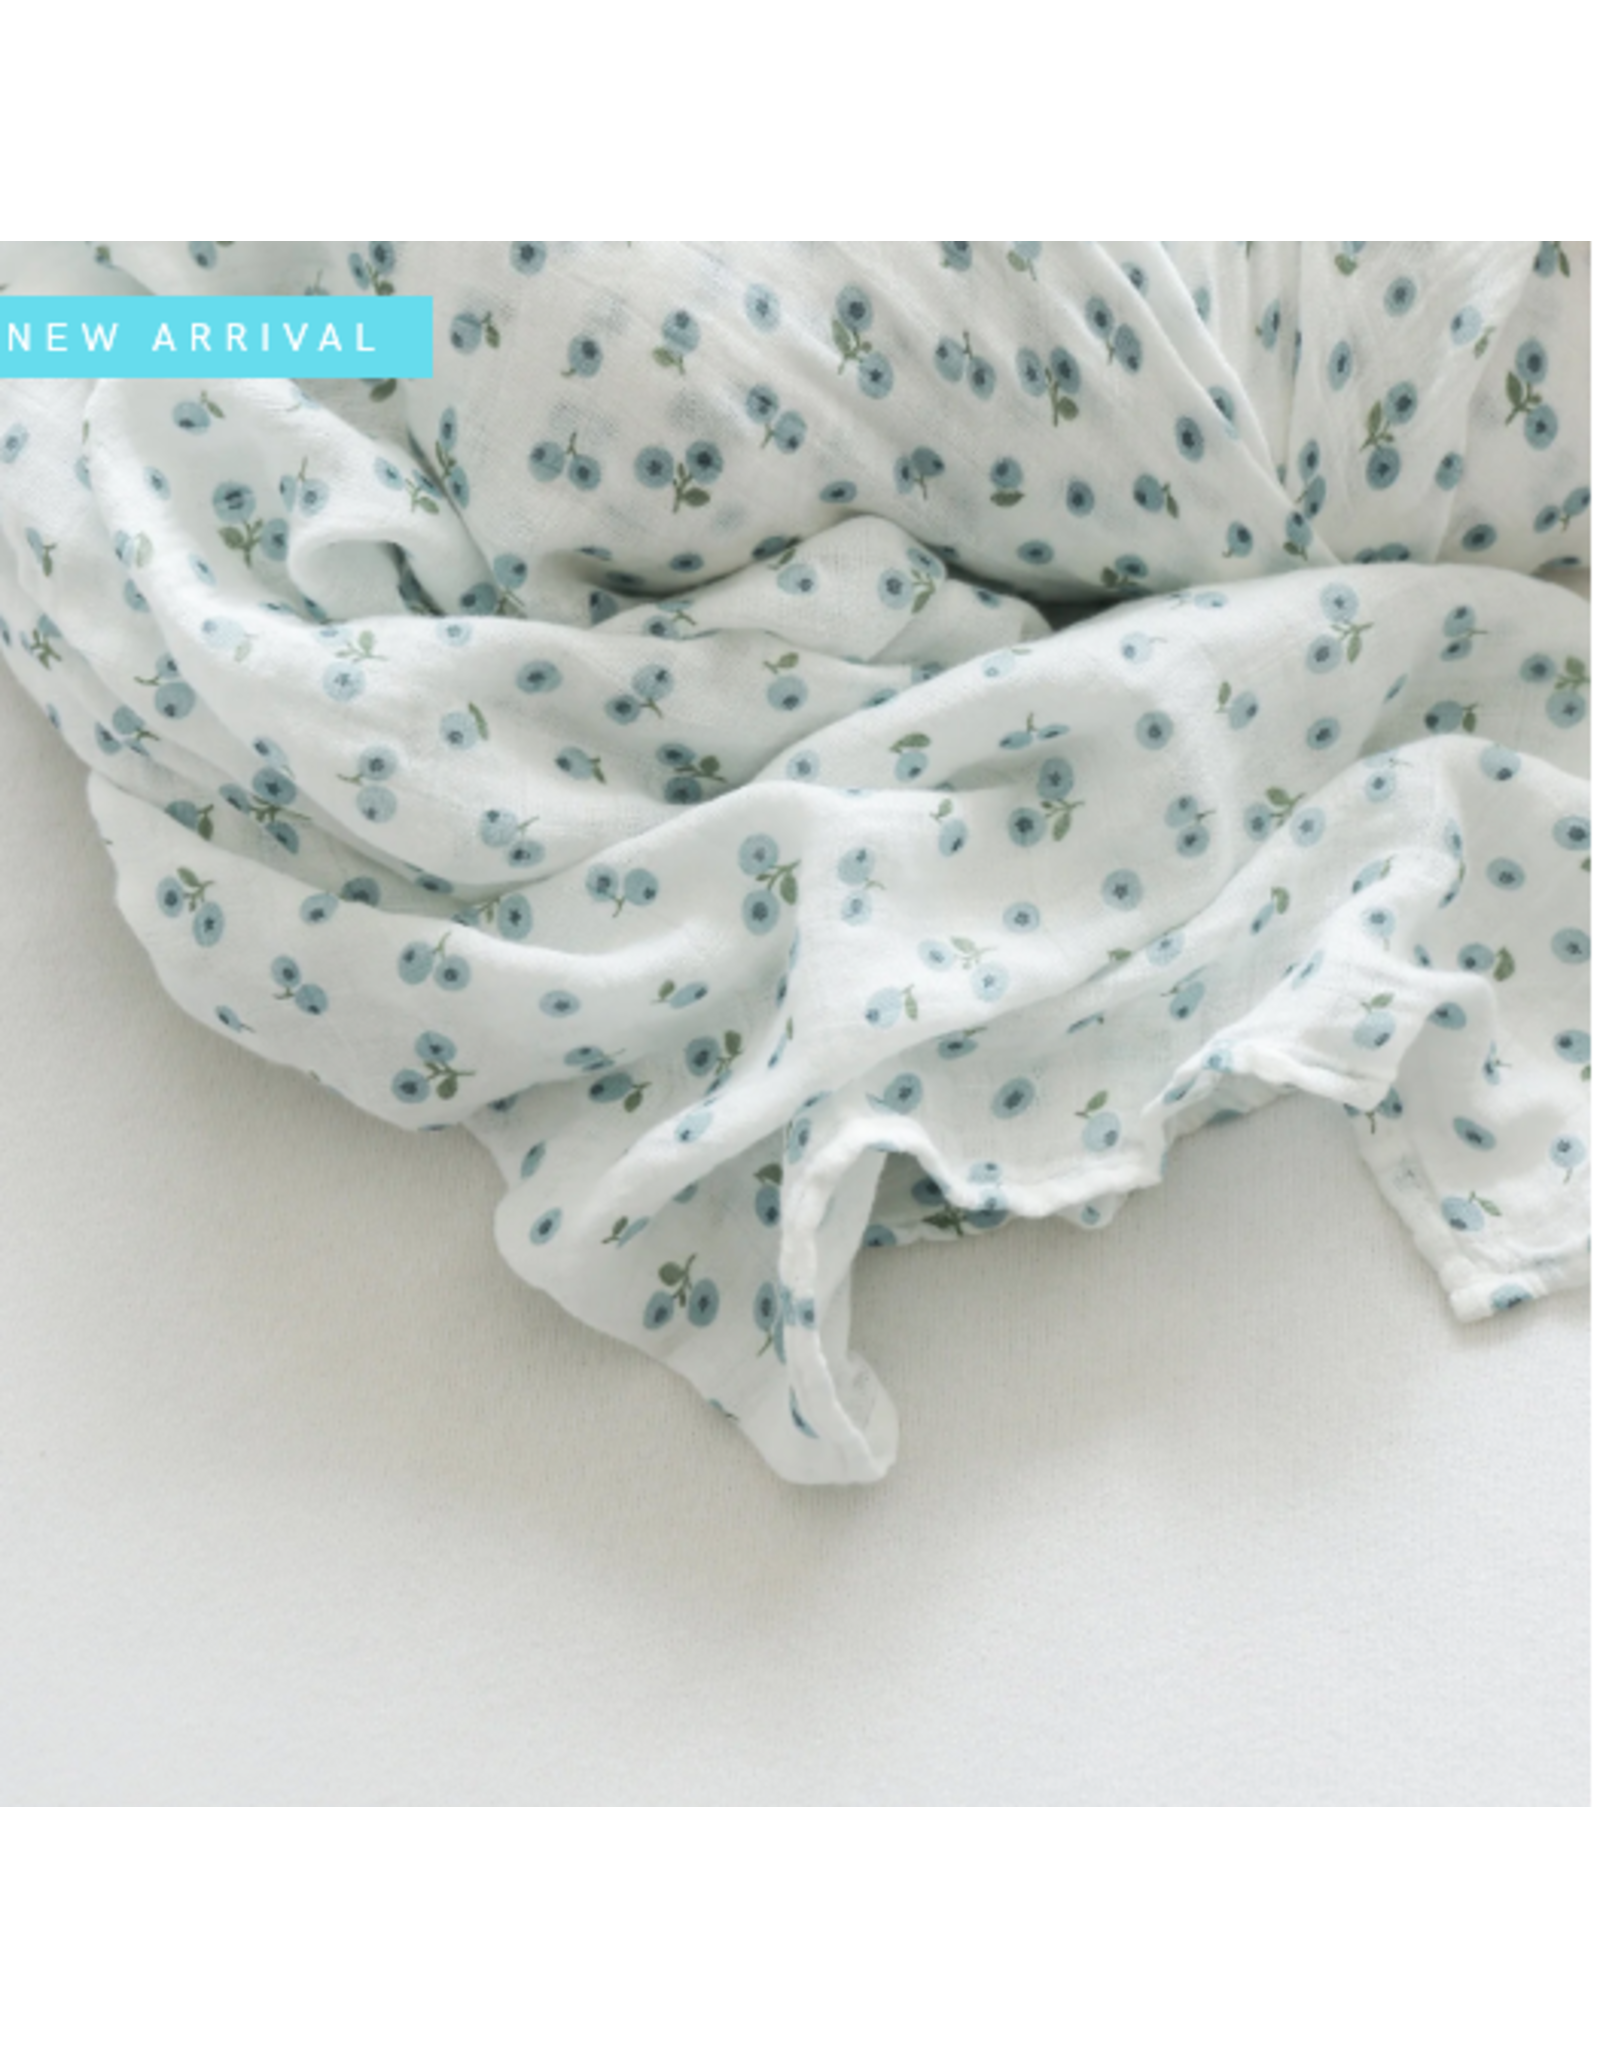 Lulujo Baby Swaddle Blanket Muslin Cotton LG Blueberries 0M+